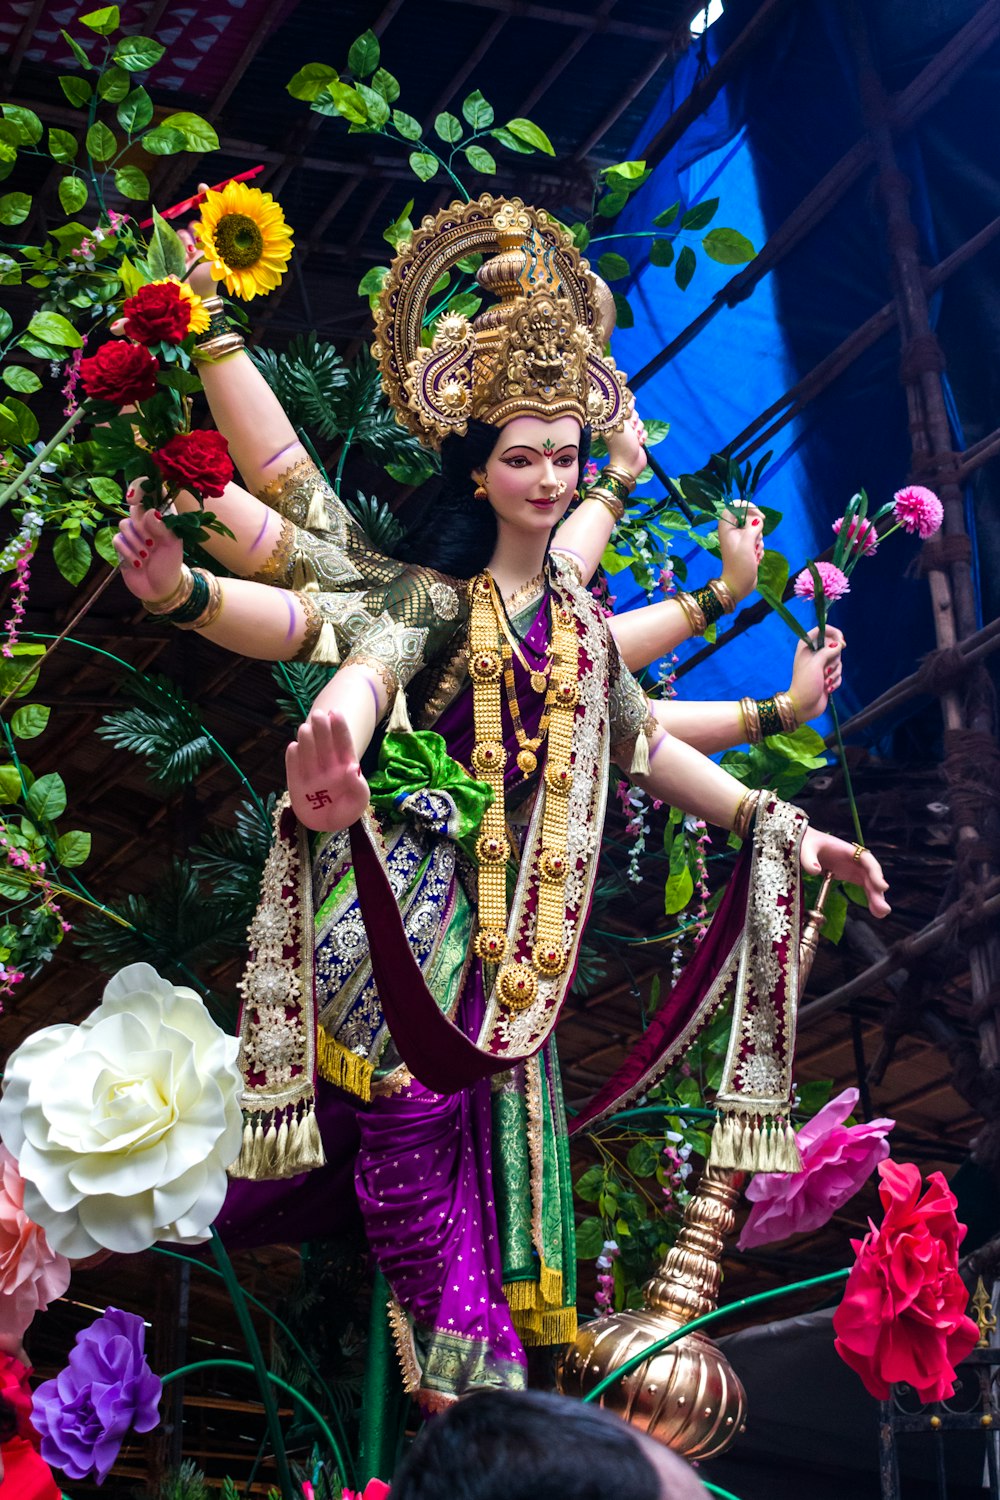 mulher no vestido roxo e dourado do sari que usa a coroa de ouro